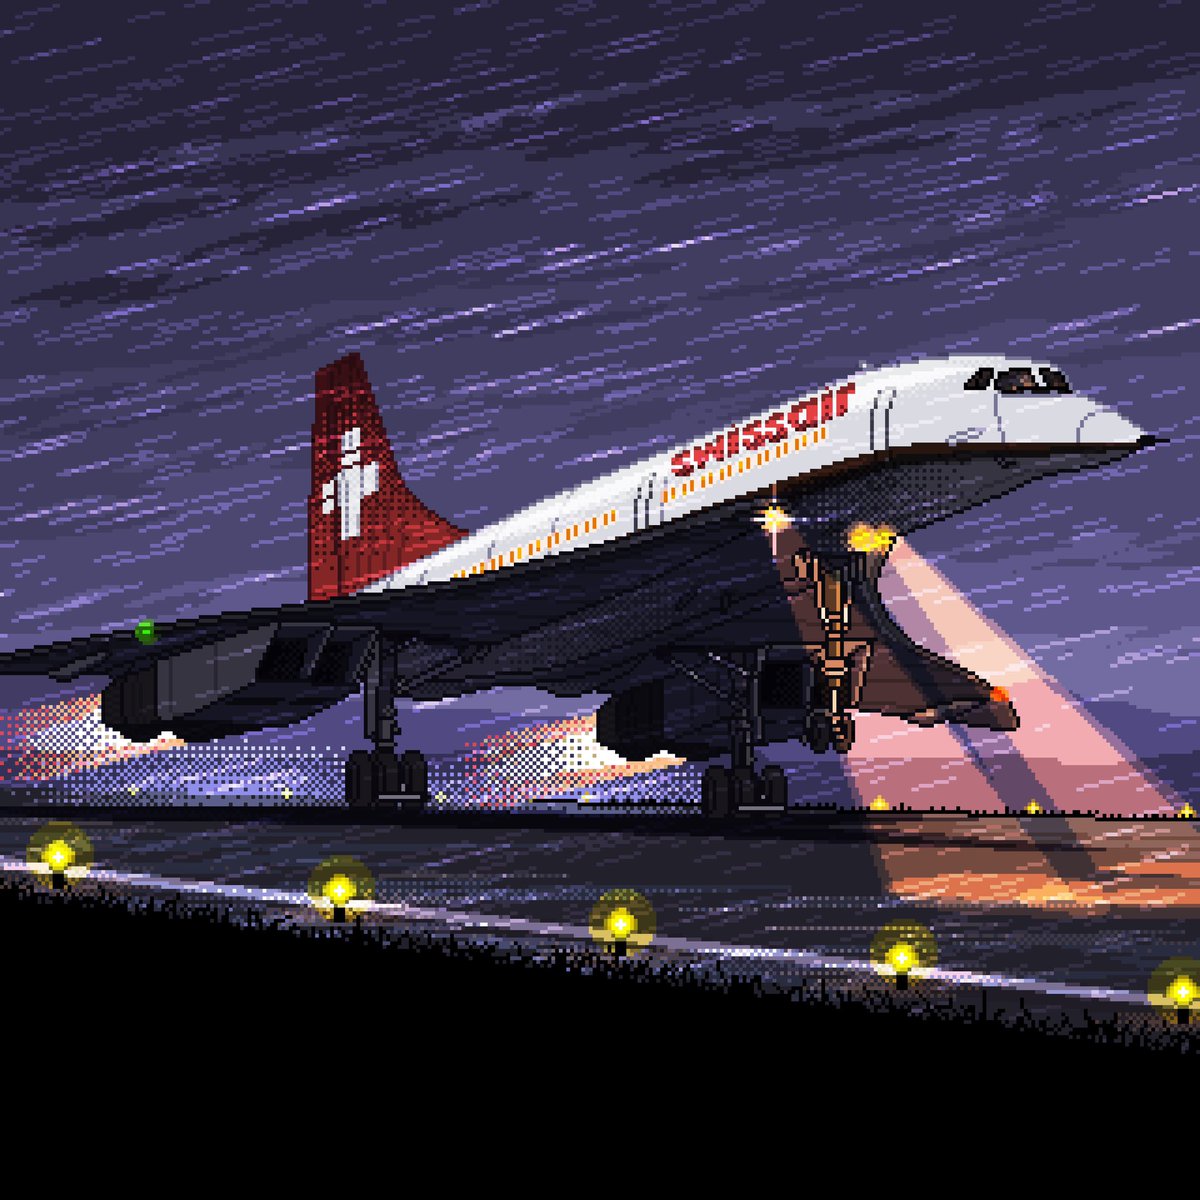 WhatIf SwissAir Concorde
.
.
#pixelart #aviation #RETROGAMING #concorde #avnerd #pixelplanes